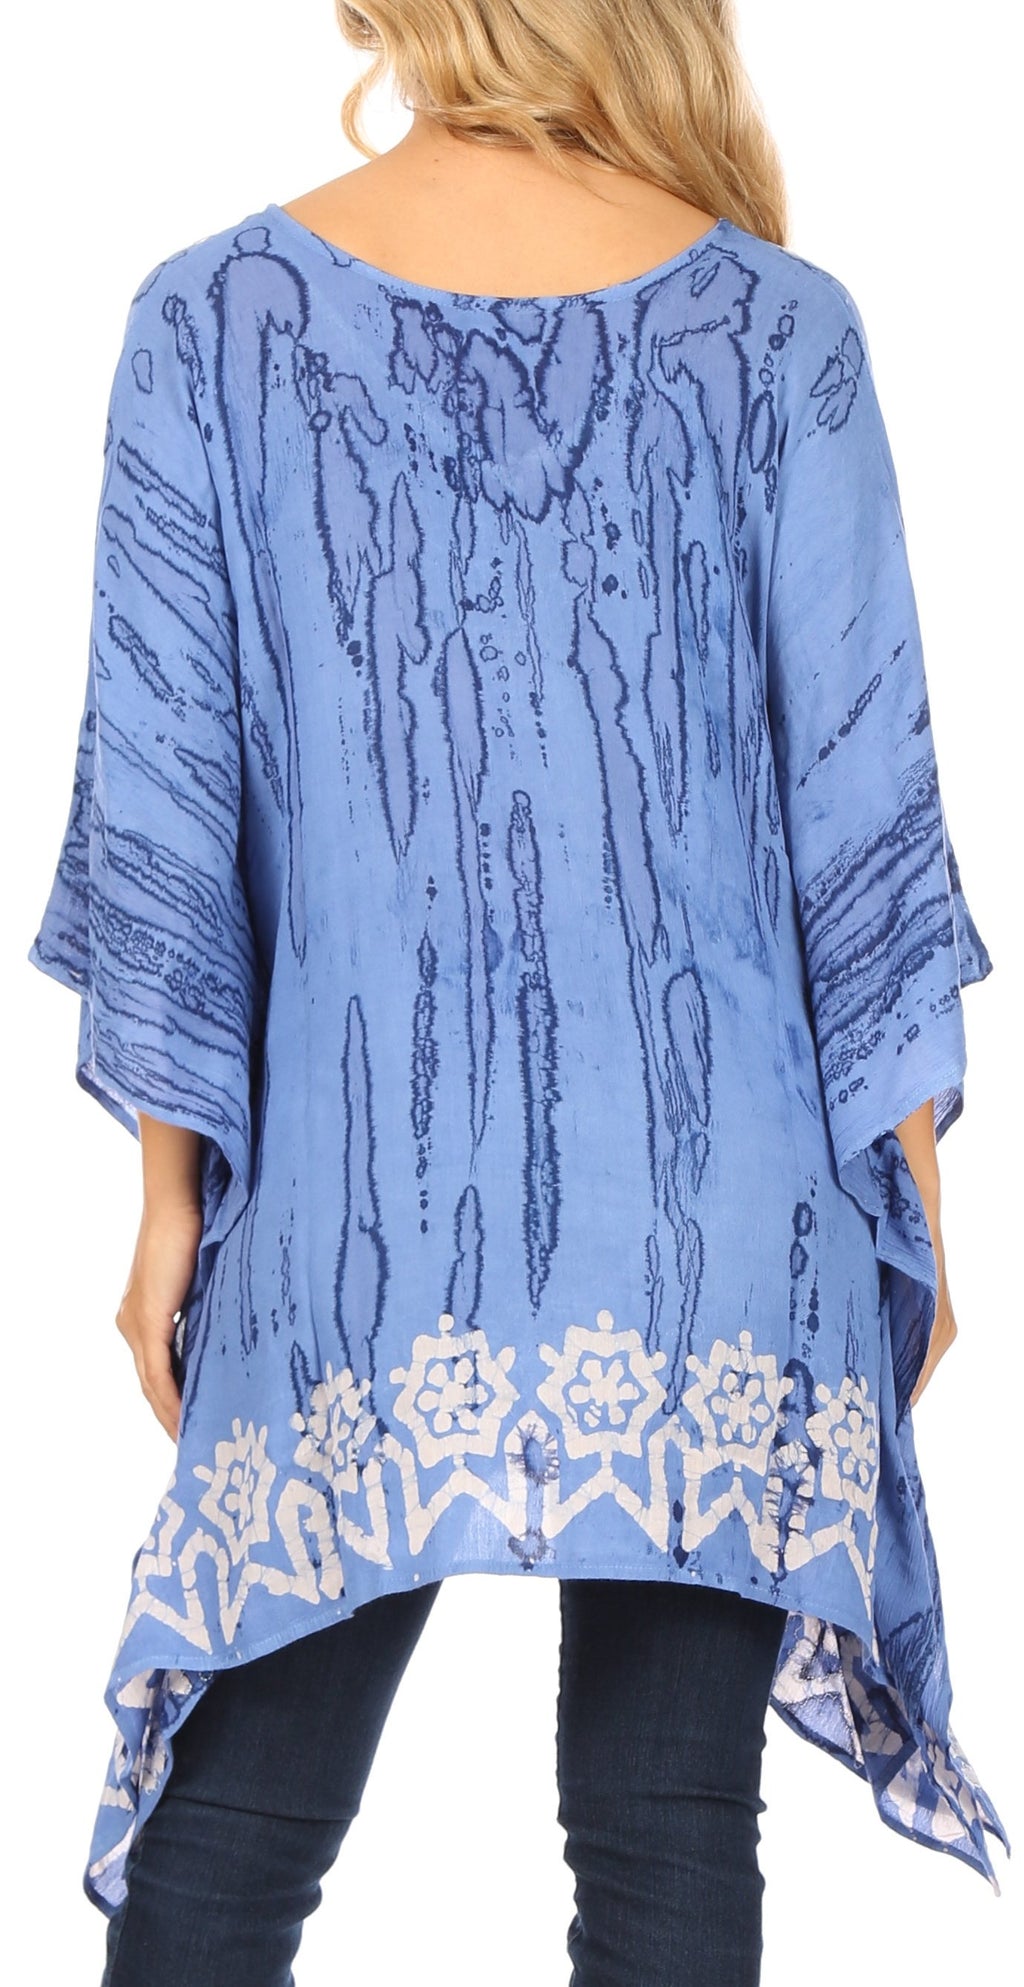 Sakkas Alizia Lightweight Embroidery Batik Top Tunic Blouse Caftan Cov